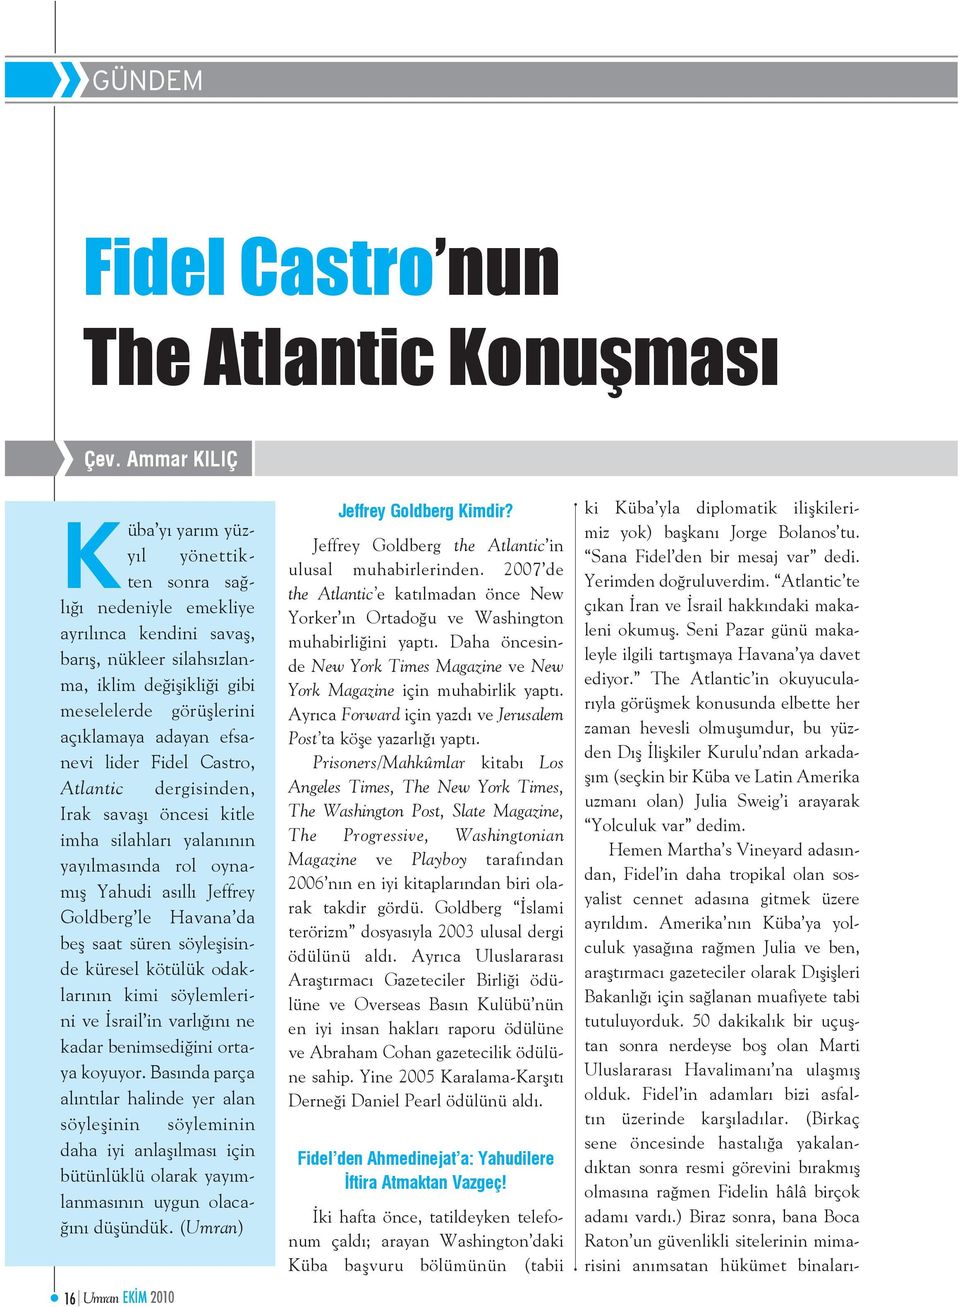 efsanevi lider Fidel Castro, Atlantic dergisinden, Irak savaşı öncesi kitle imha silahları yalanının yayılmasında rol oynamış Yahudi asıllı Jeffrey Goldberg le Havana da beş saat süren söyleşisinde